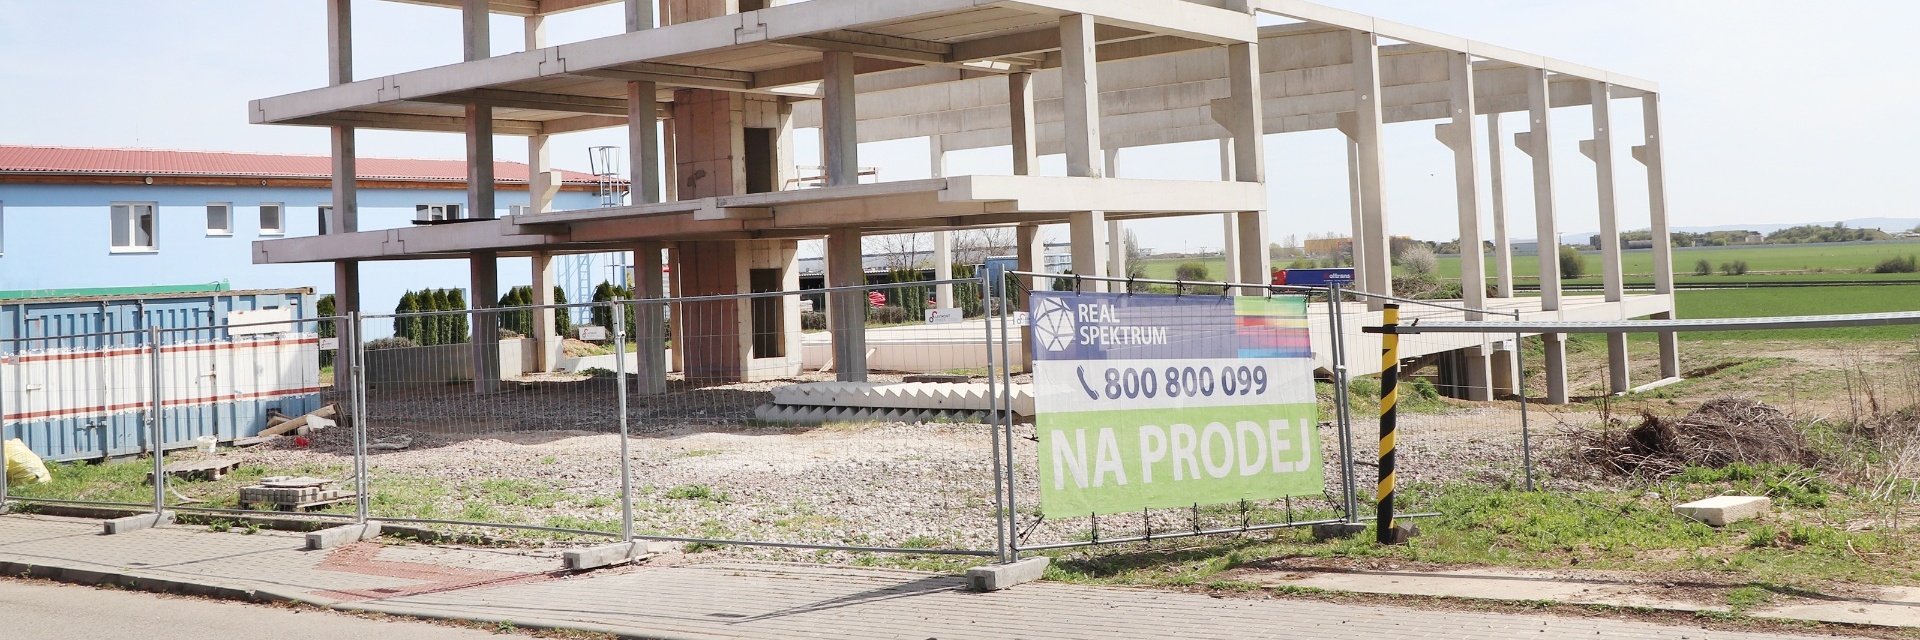 Prodej rozestavěného sídla firmy na lukrativním místě, Brno Černovické terasy